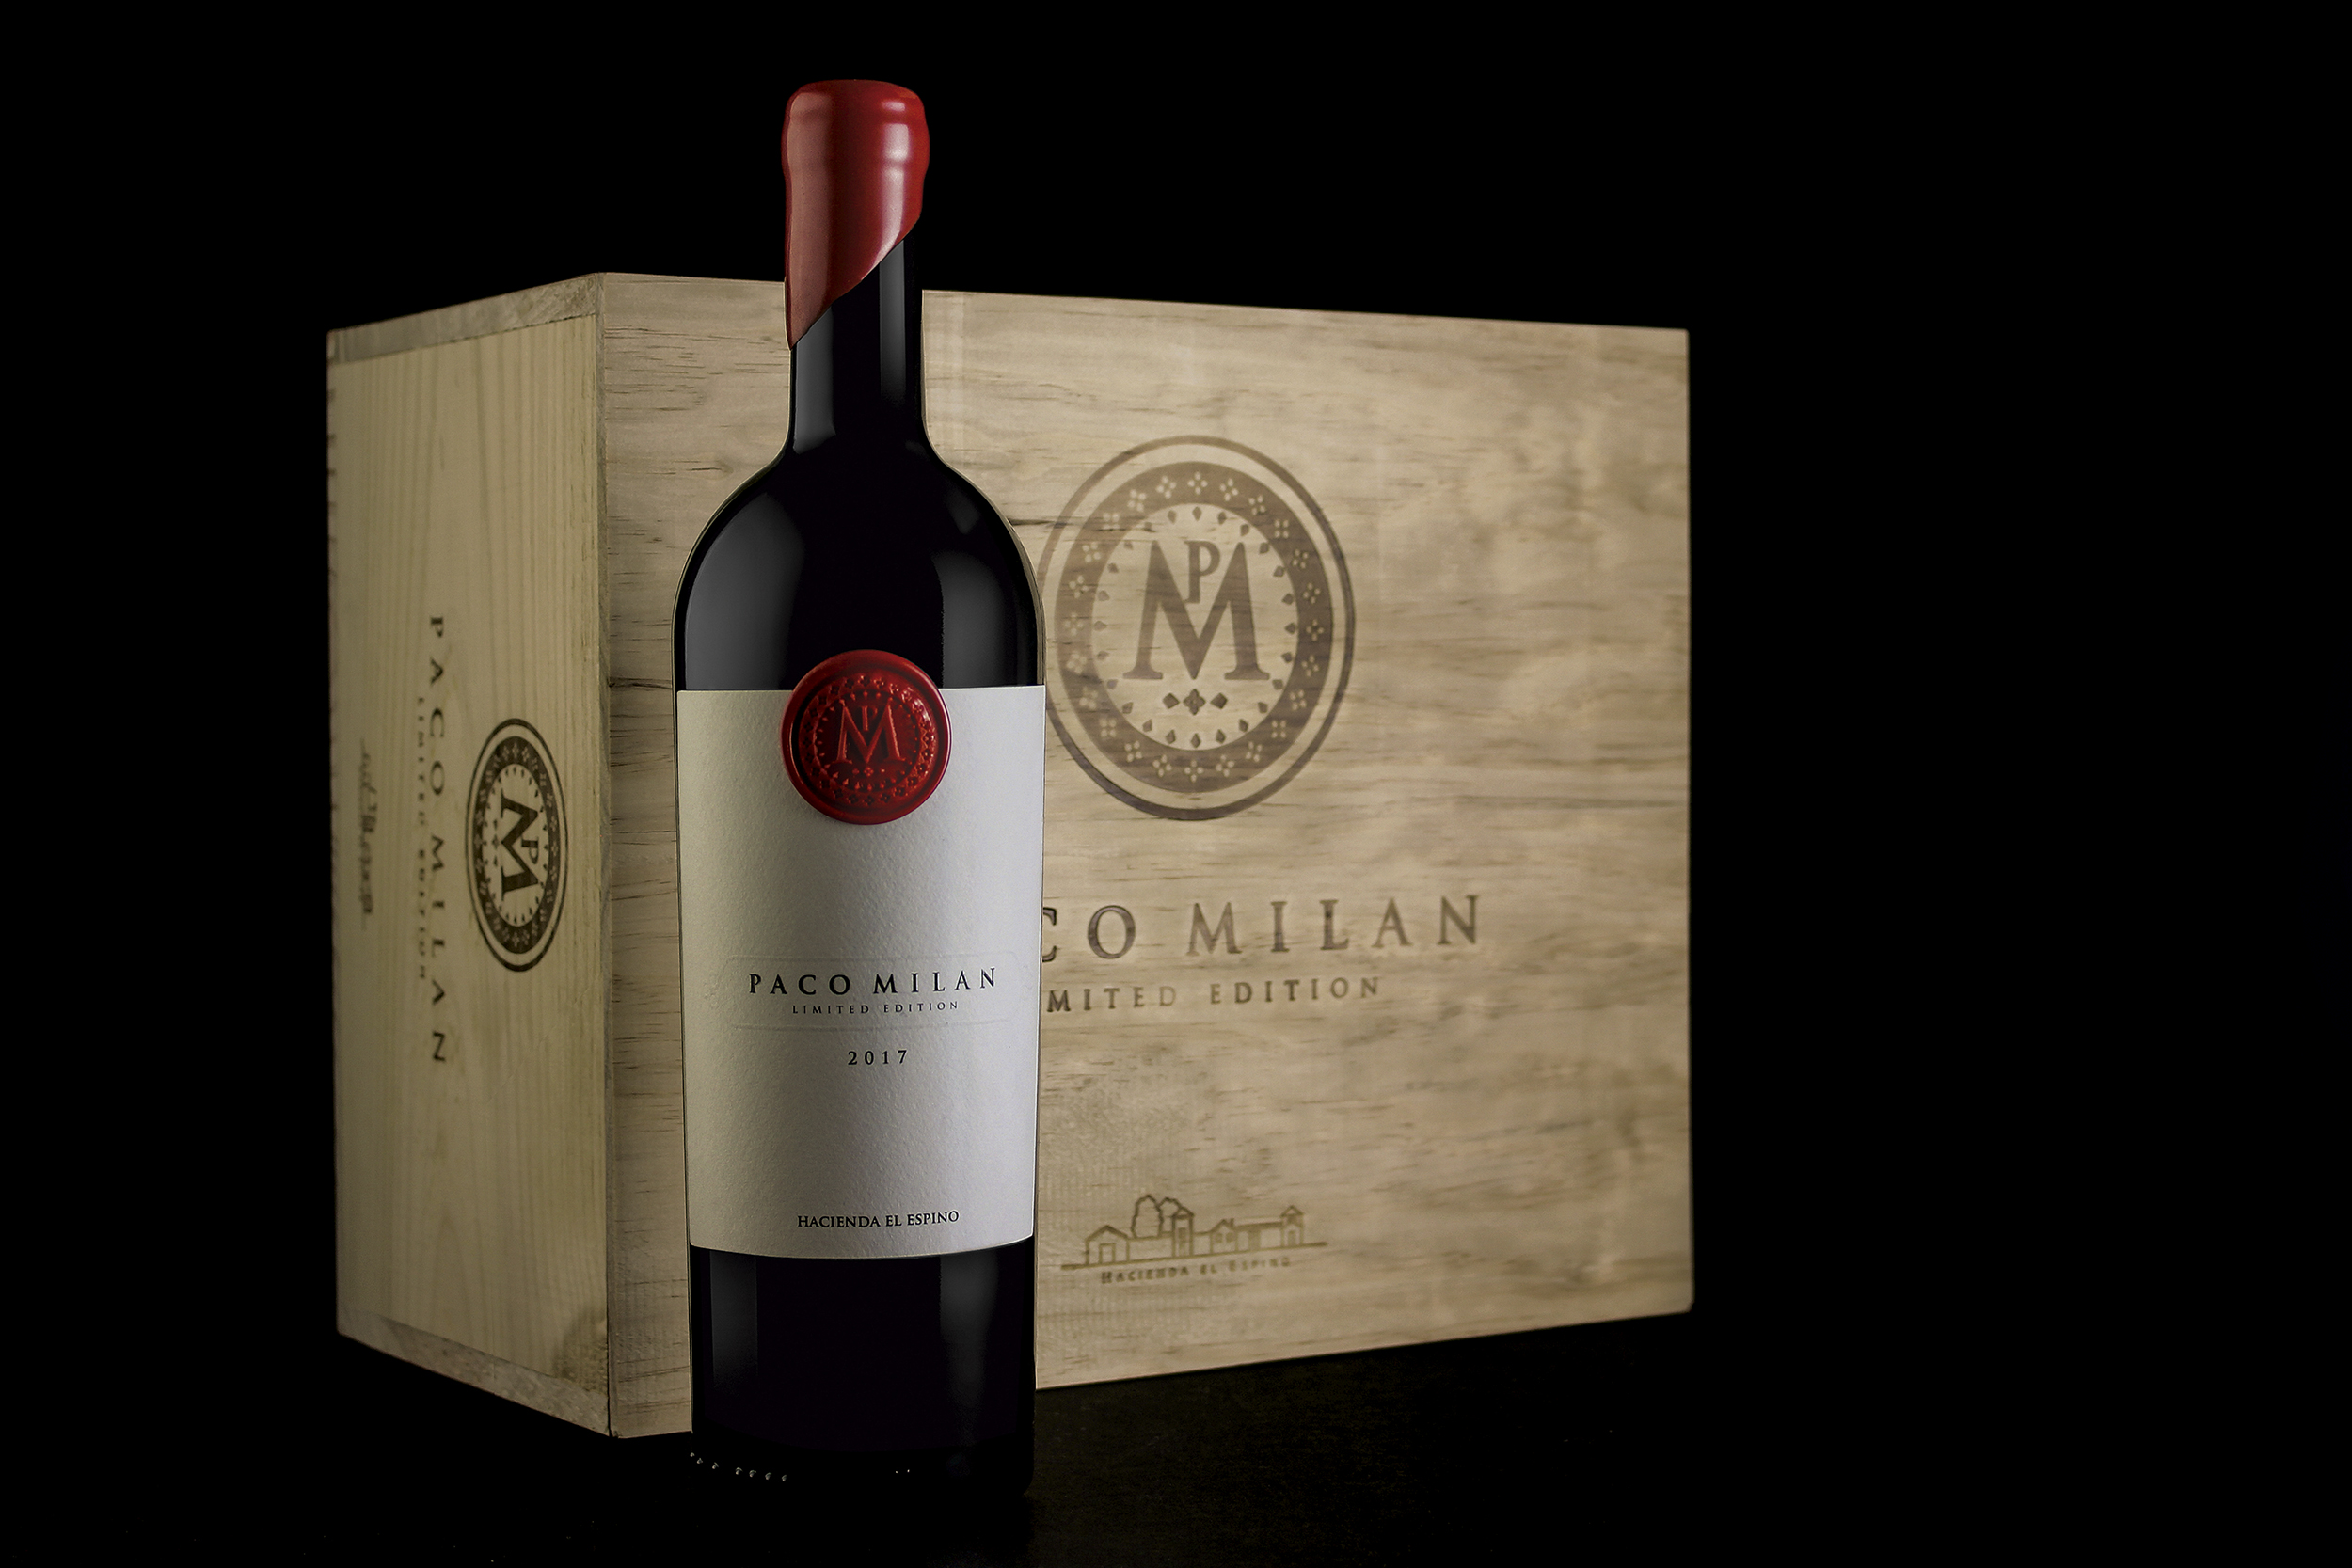 armoder estudio de diseño etiqueta vino packaging Valencia